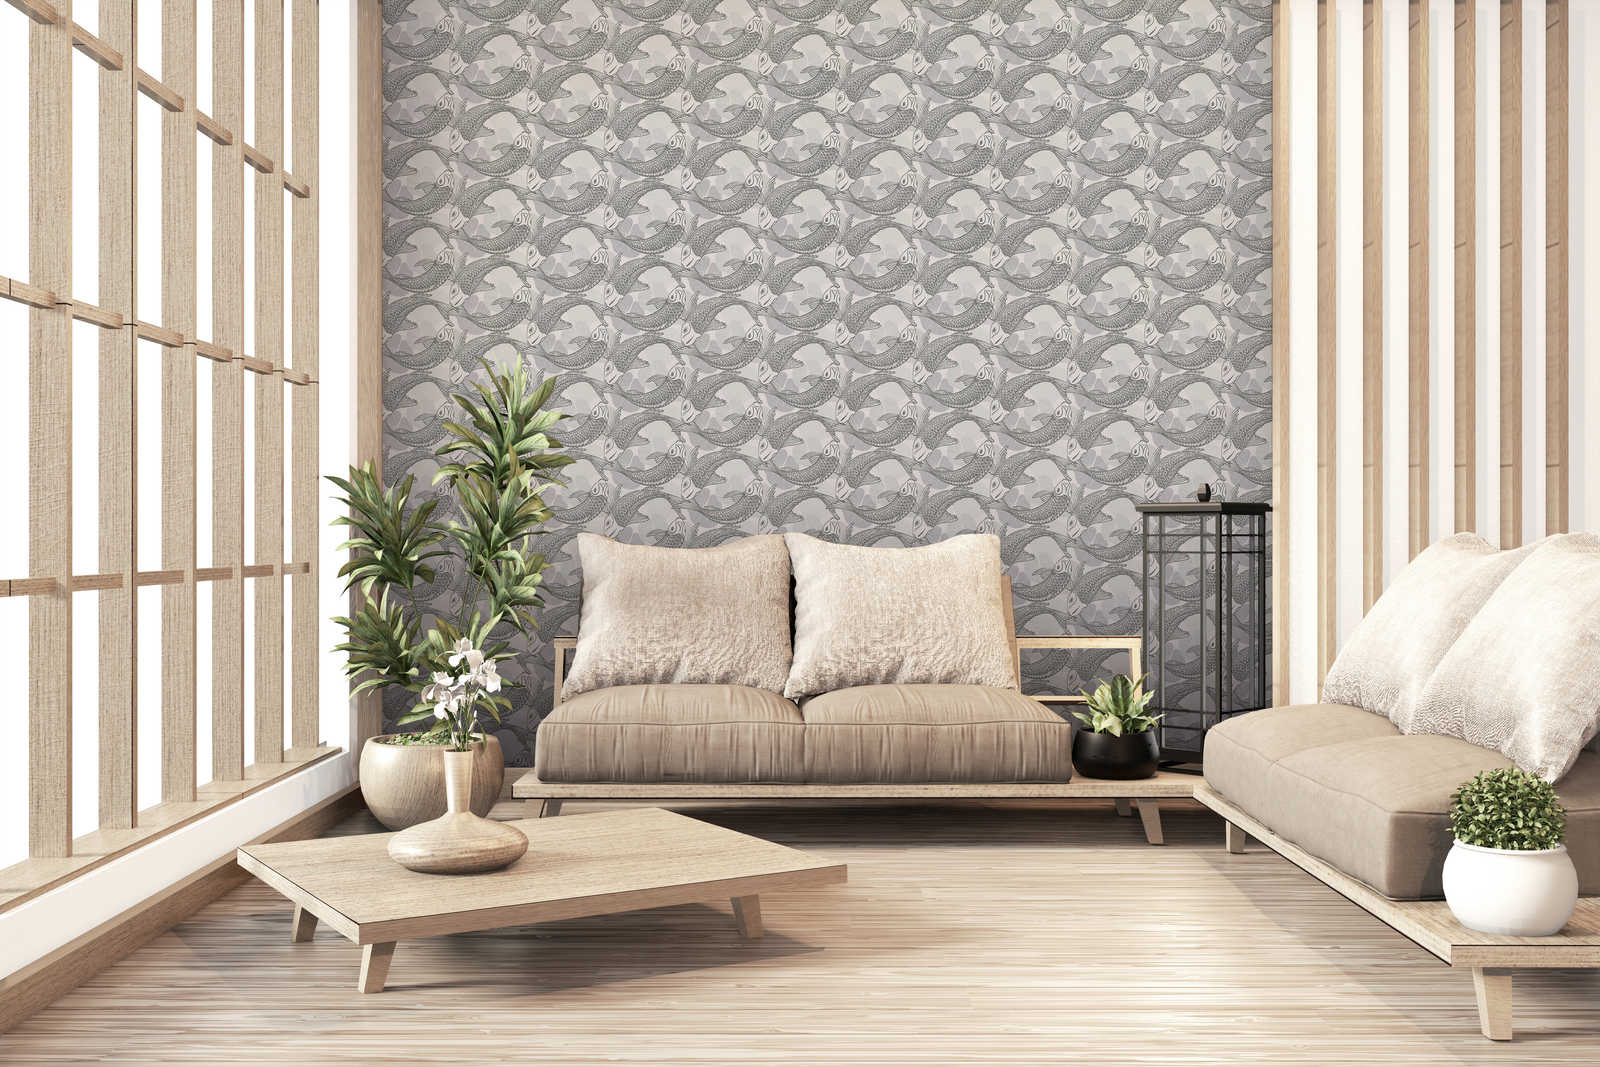             Tapete Koi-Design im Asia Style mit Metallic-Effekt – Beige, Grau, Metallic
        